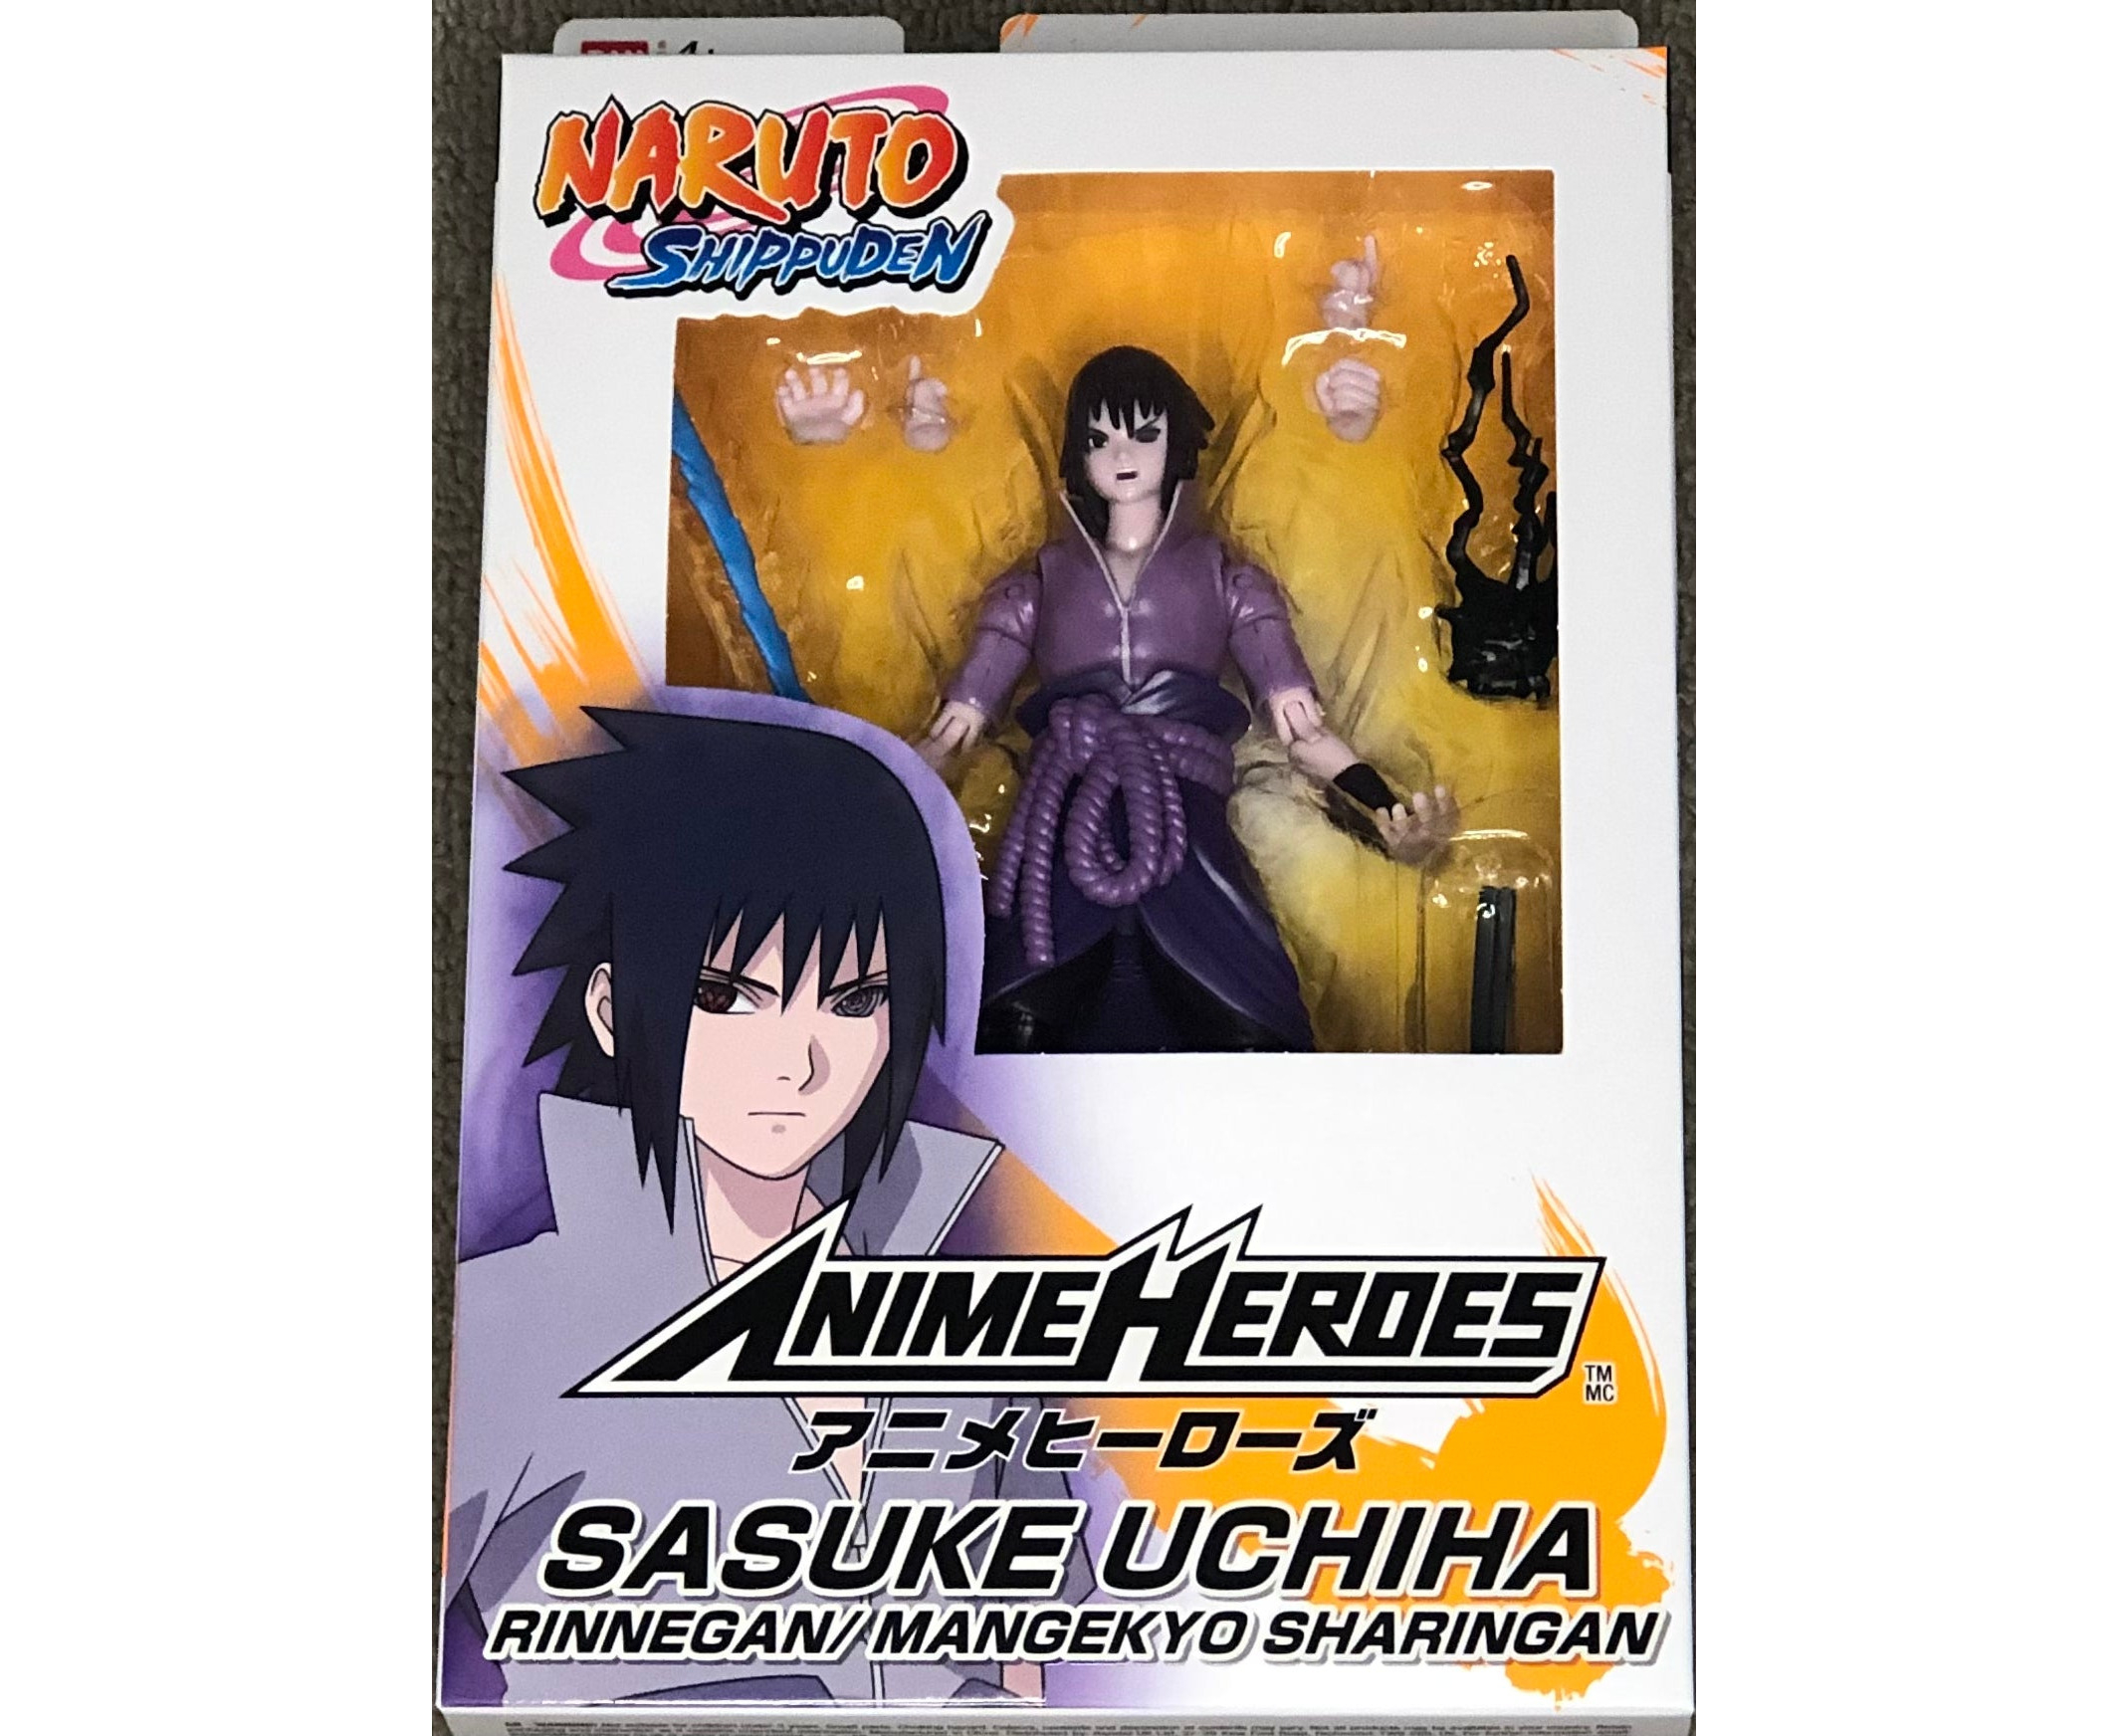 Bandai America Anime Heroes Uzumaki Naruto & Uchiha Sasuke (Naruto:  Shippuden) Figure Review - YouTube